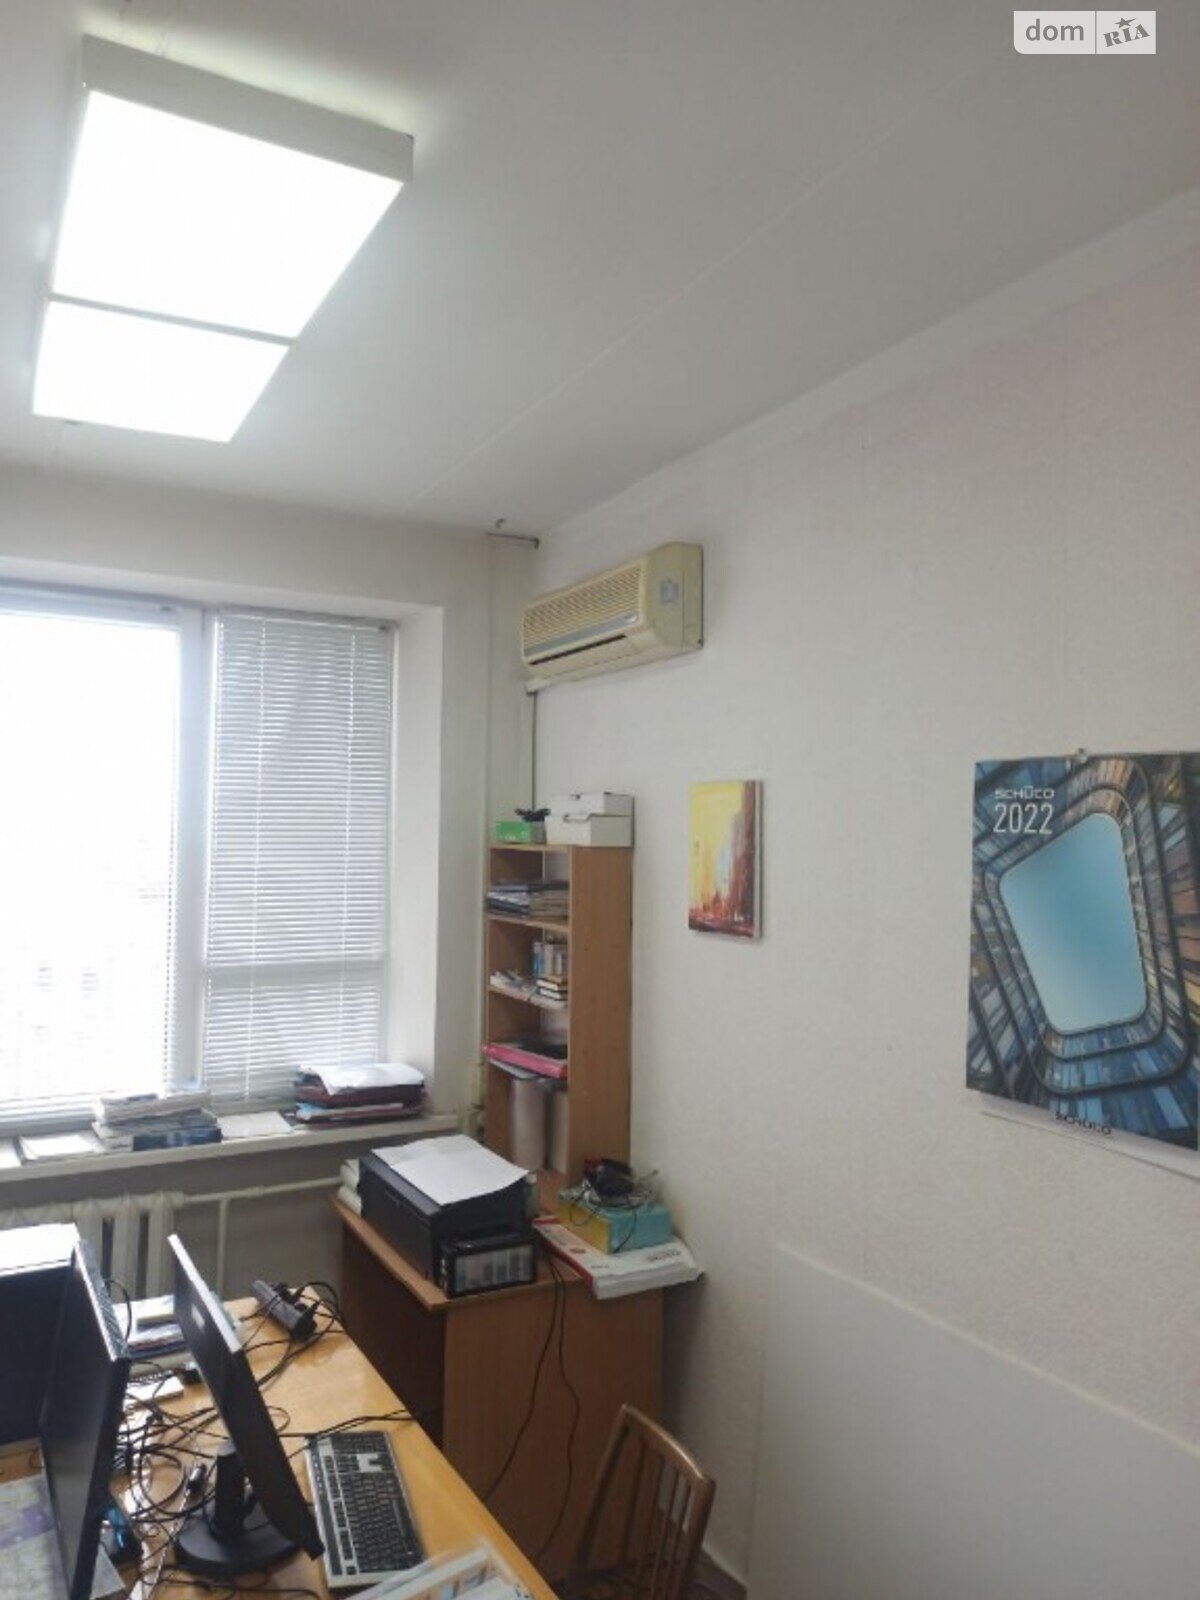 Аренда офисного помещения в Днепре, Европейский бульвар 5, помещений - 2, этаж - 6 фото 1